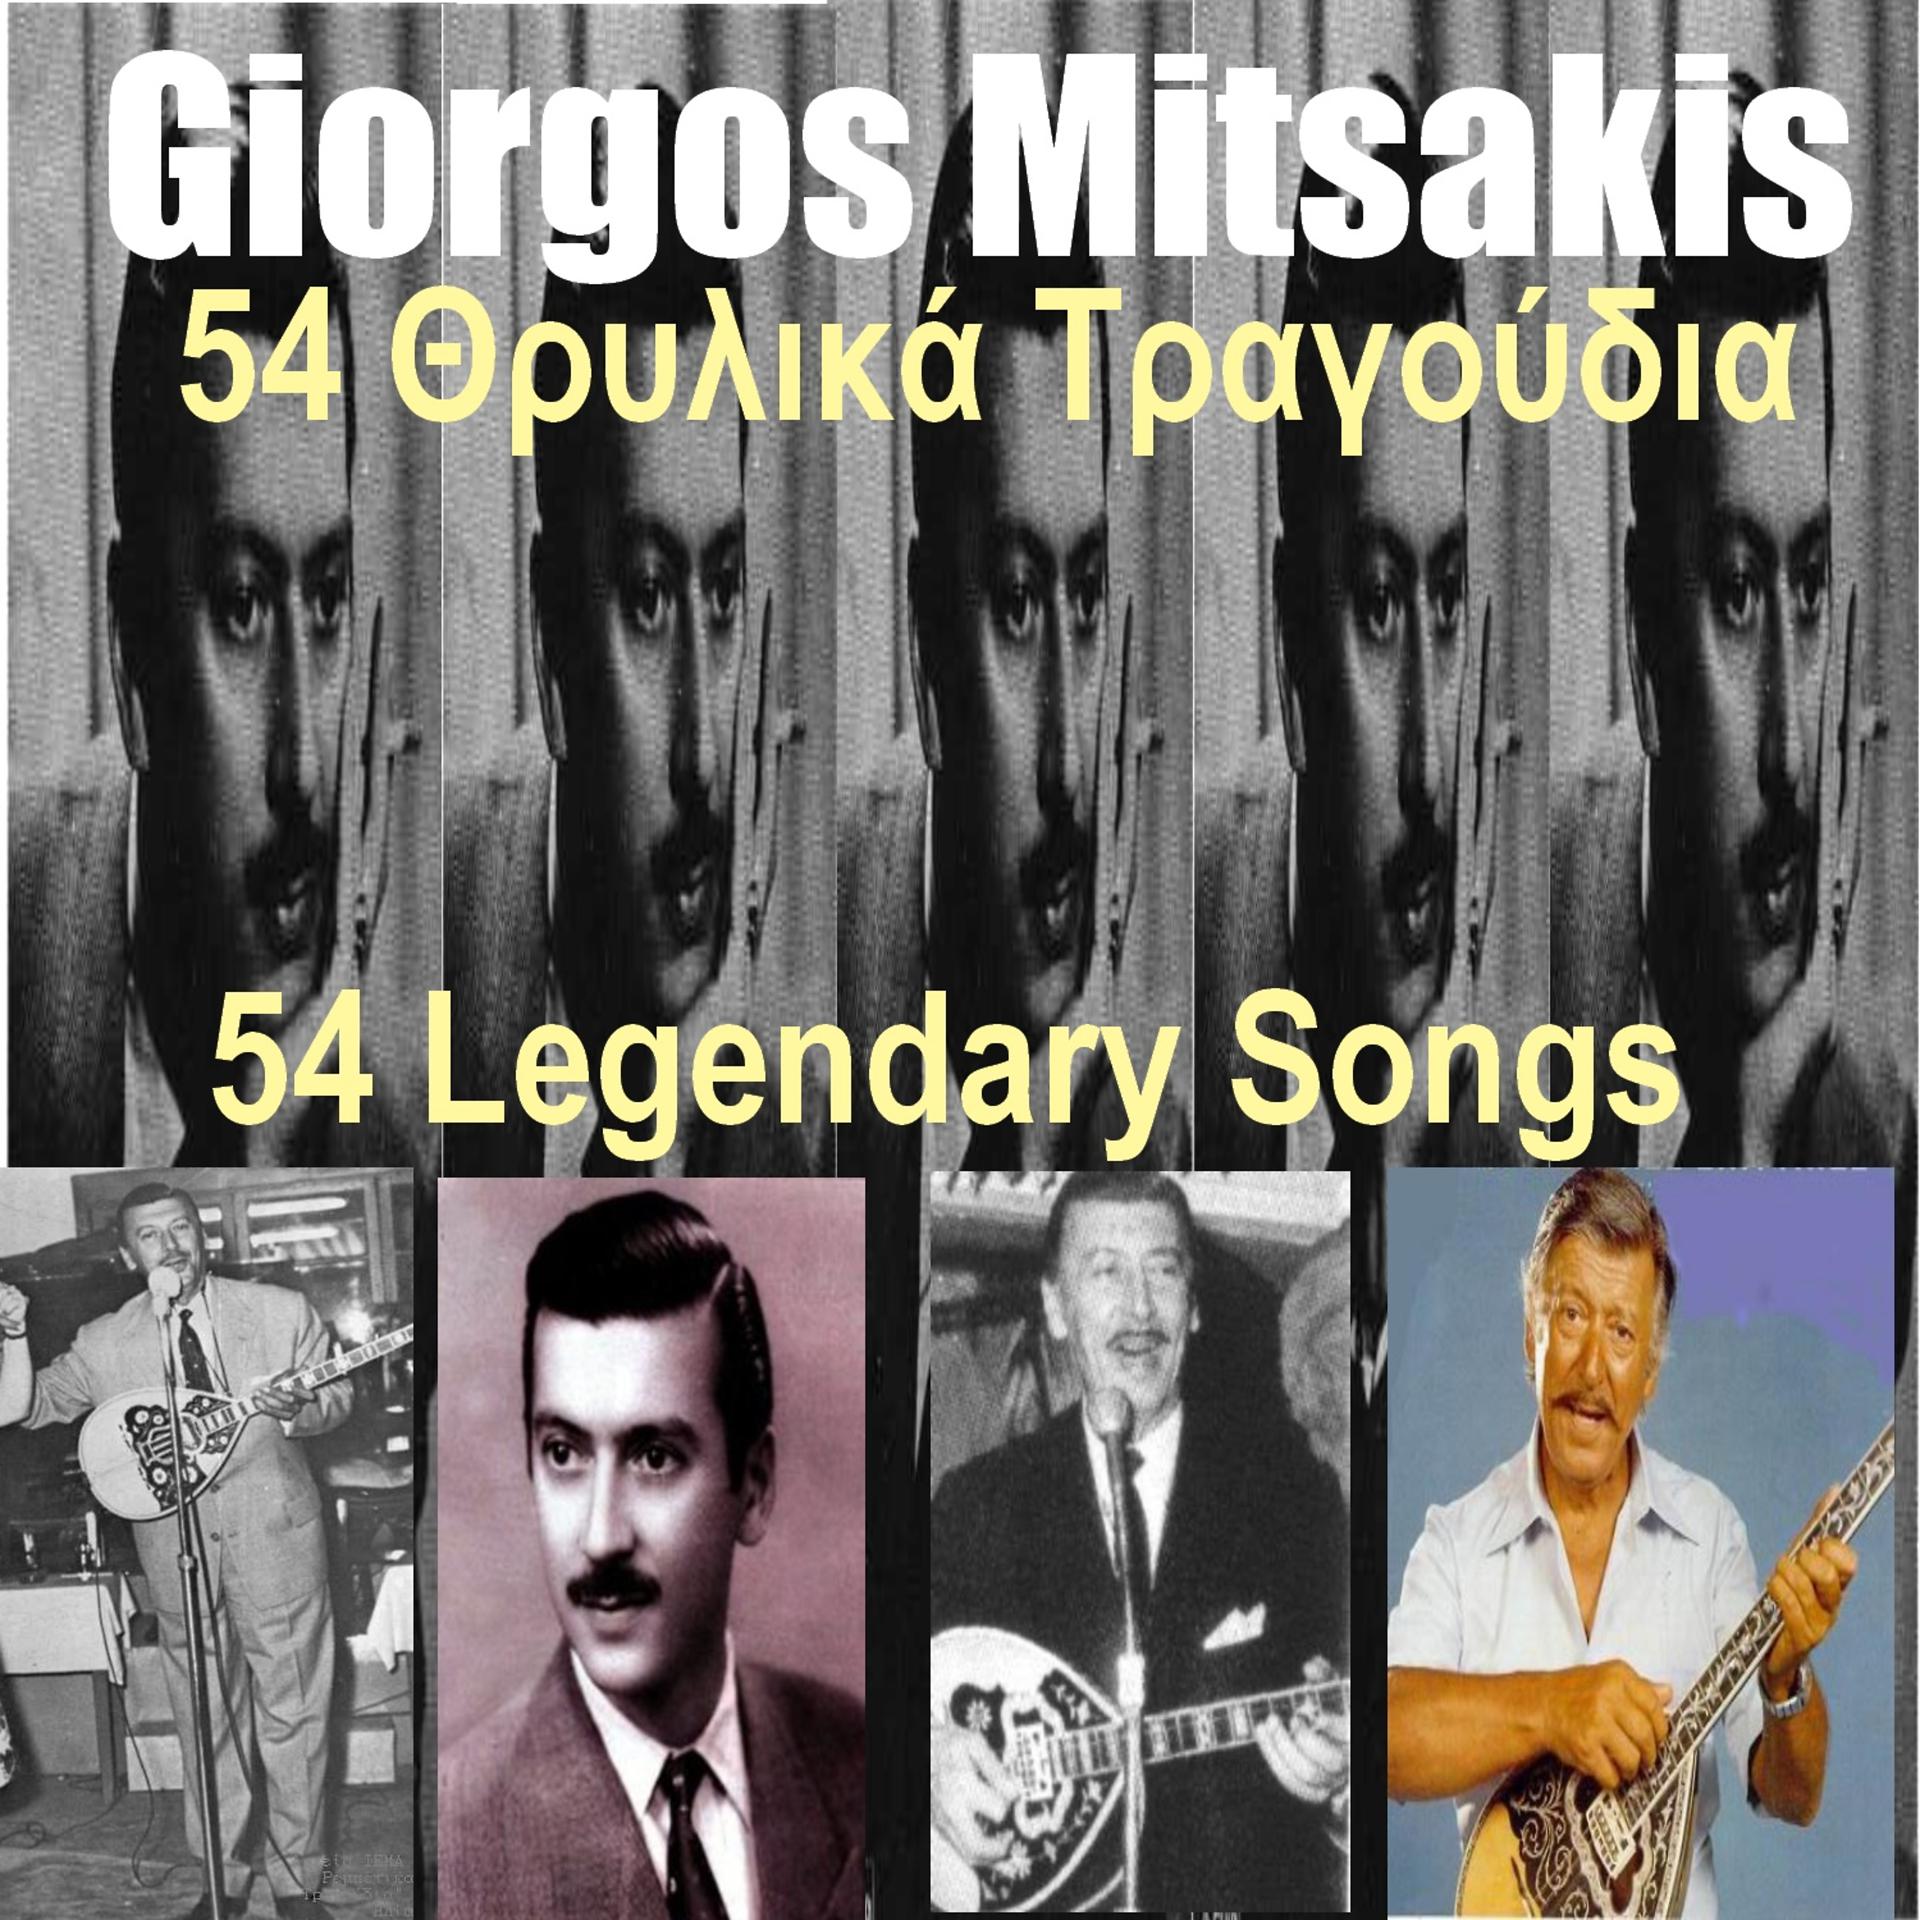 Постер альбома Giorgos Mitsakis 54 Thrylika Tragoudia - Yiorgos Mitsakis 54 Legendary Songs